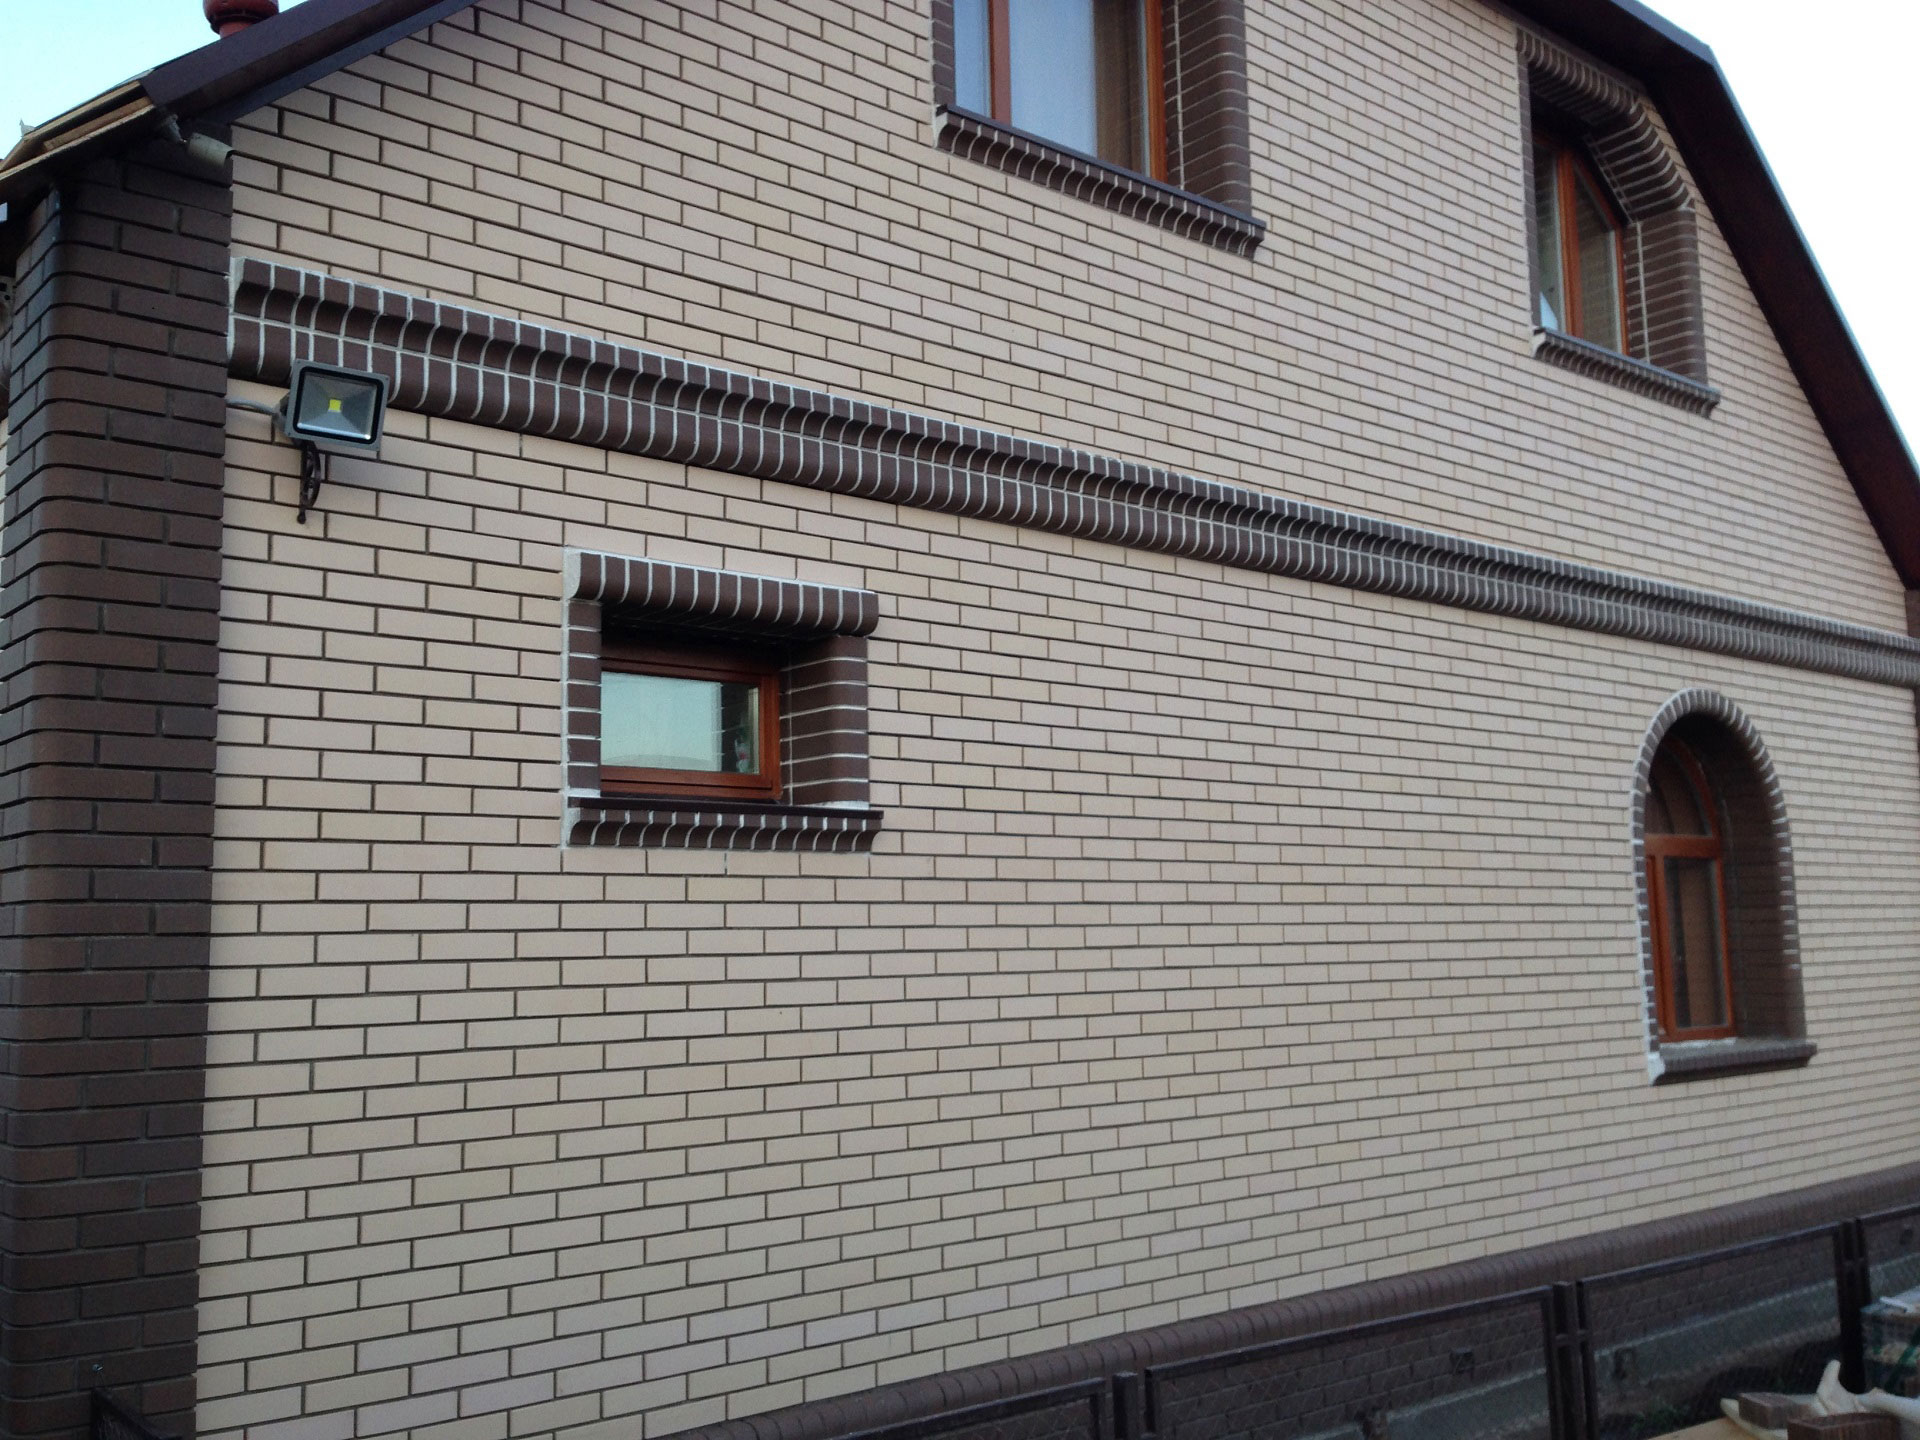 Фасад дома облицованный лицевым керамическим кирпичом белого и коричневого цвета производства Старооскольского кирпичного завода